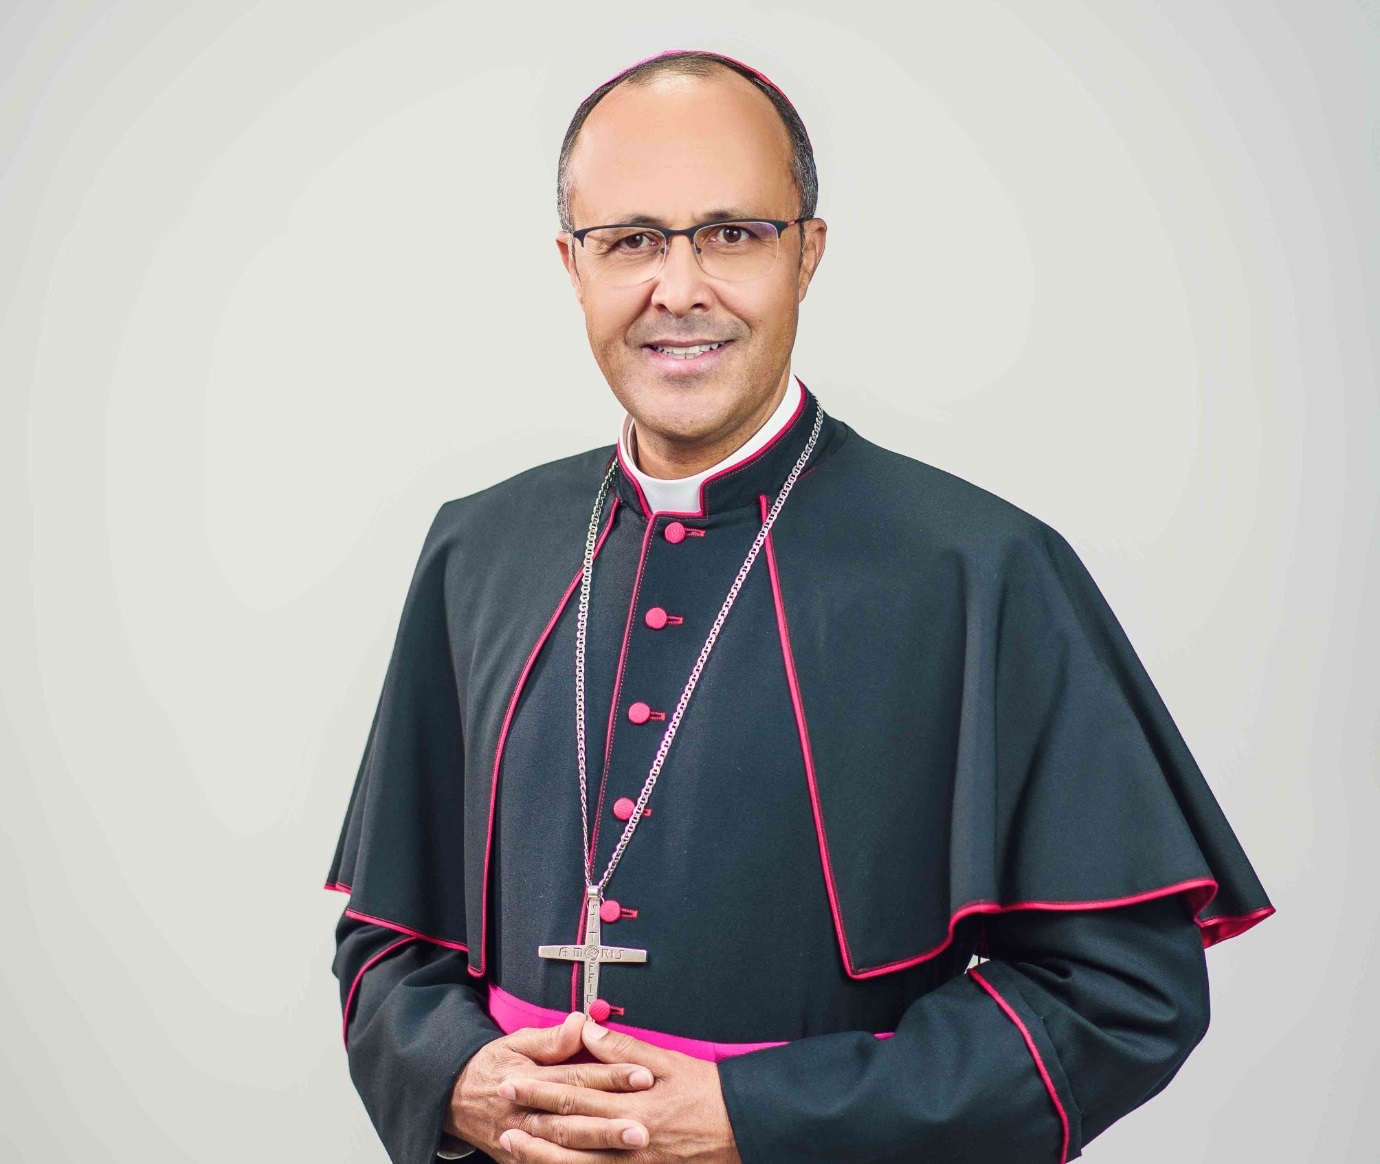 Diocese de Divinópolis apresenta o novo bispo Dom Geovane Luis da Silva – conheça a sua trajetória